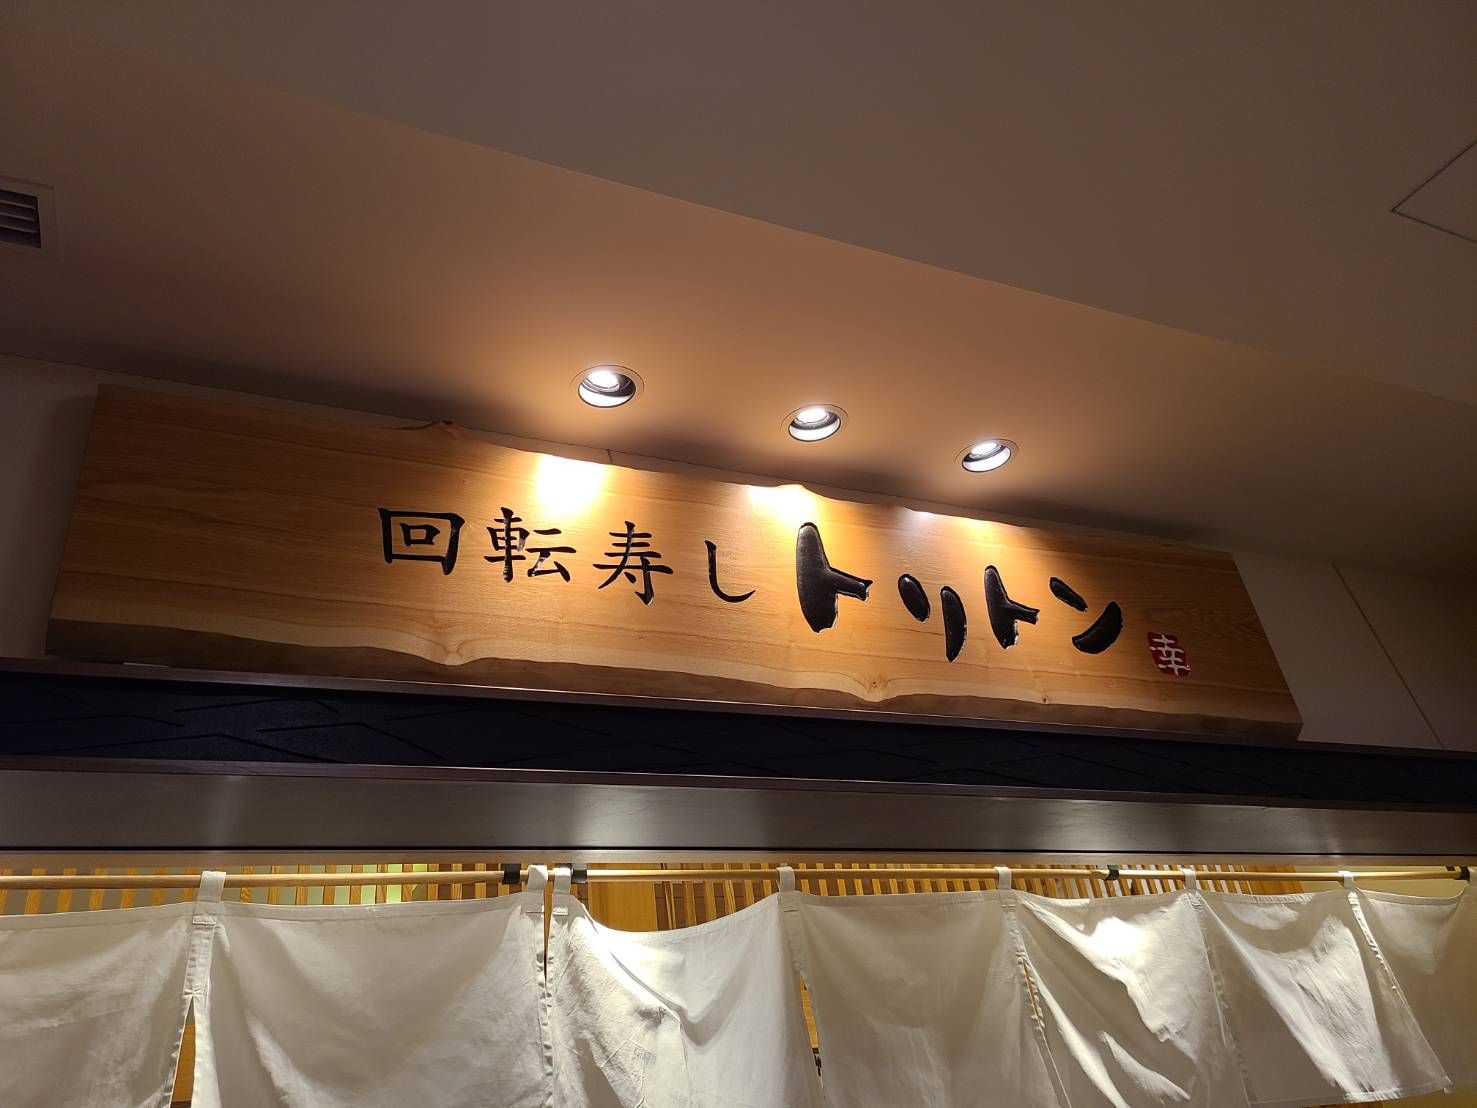 東京ソラマチにある回転寿司